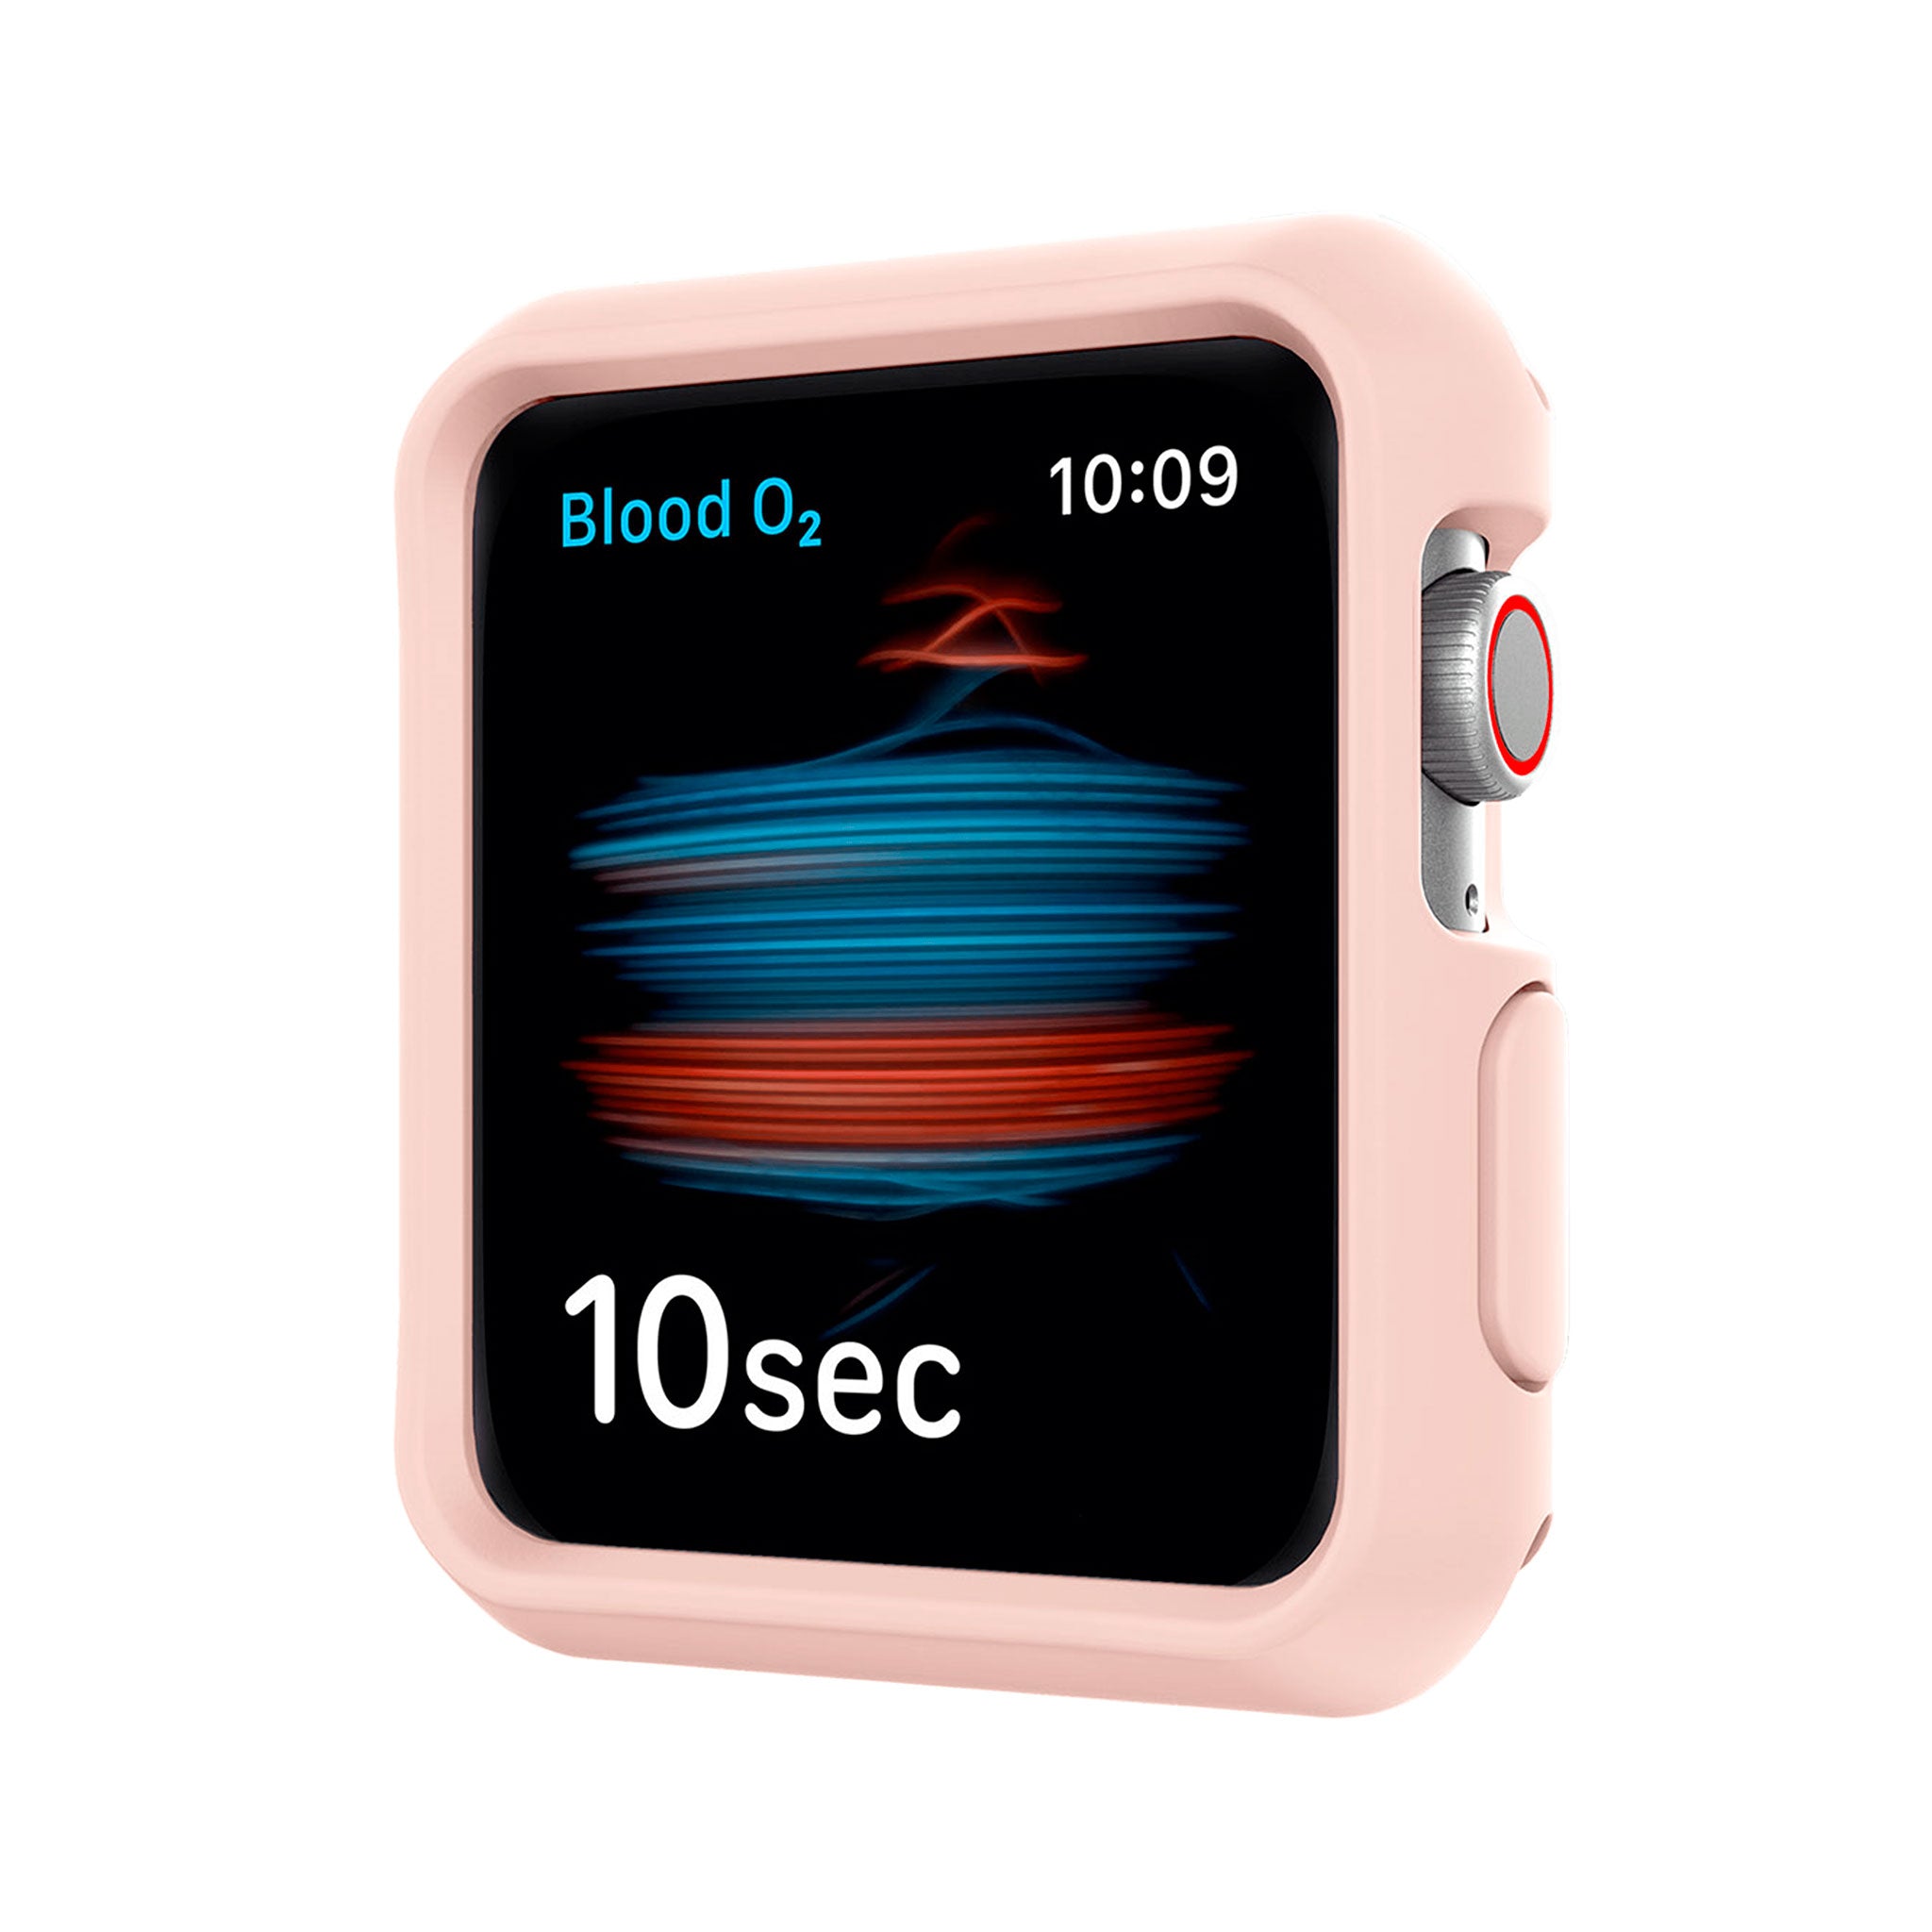 Itskins - Spectrum Solid Bumper Case 2 Pack For Apple Watch 44mm - Light Pink